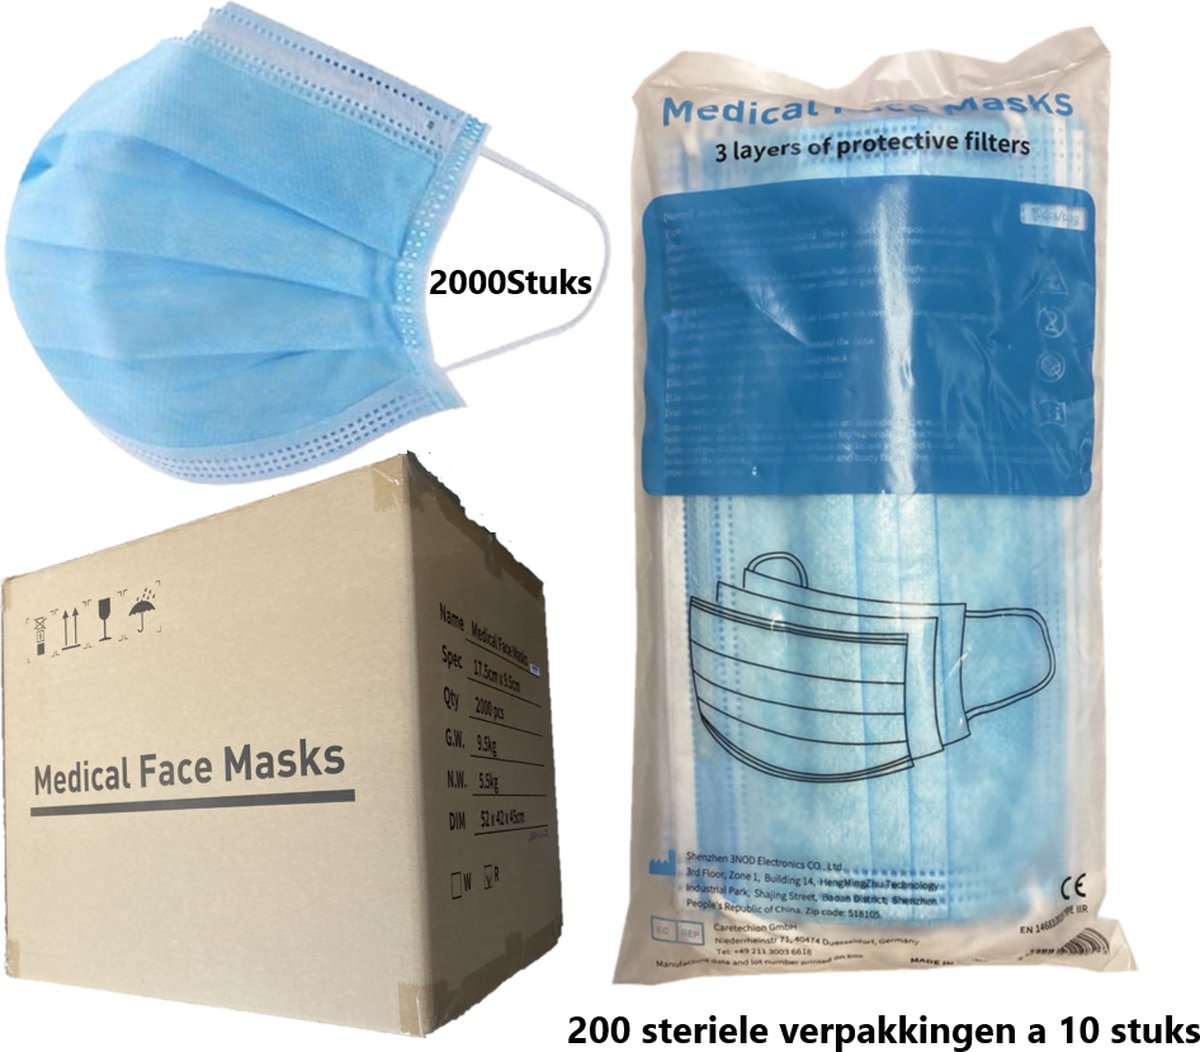 2000 stuks wegwerp medische mondkapjes type IIR / 2R - 200 steriele poly-bag verpakkingen a 10 stuks - Chirurgische Mondkapjes - Wegwerp Mondmaskers